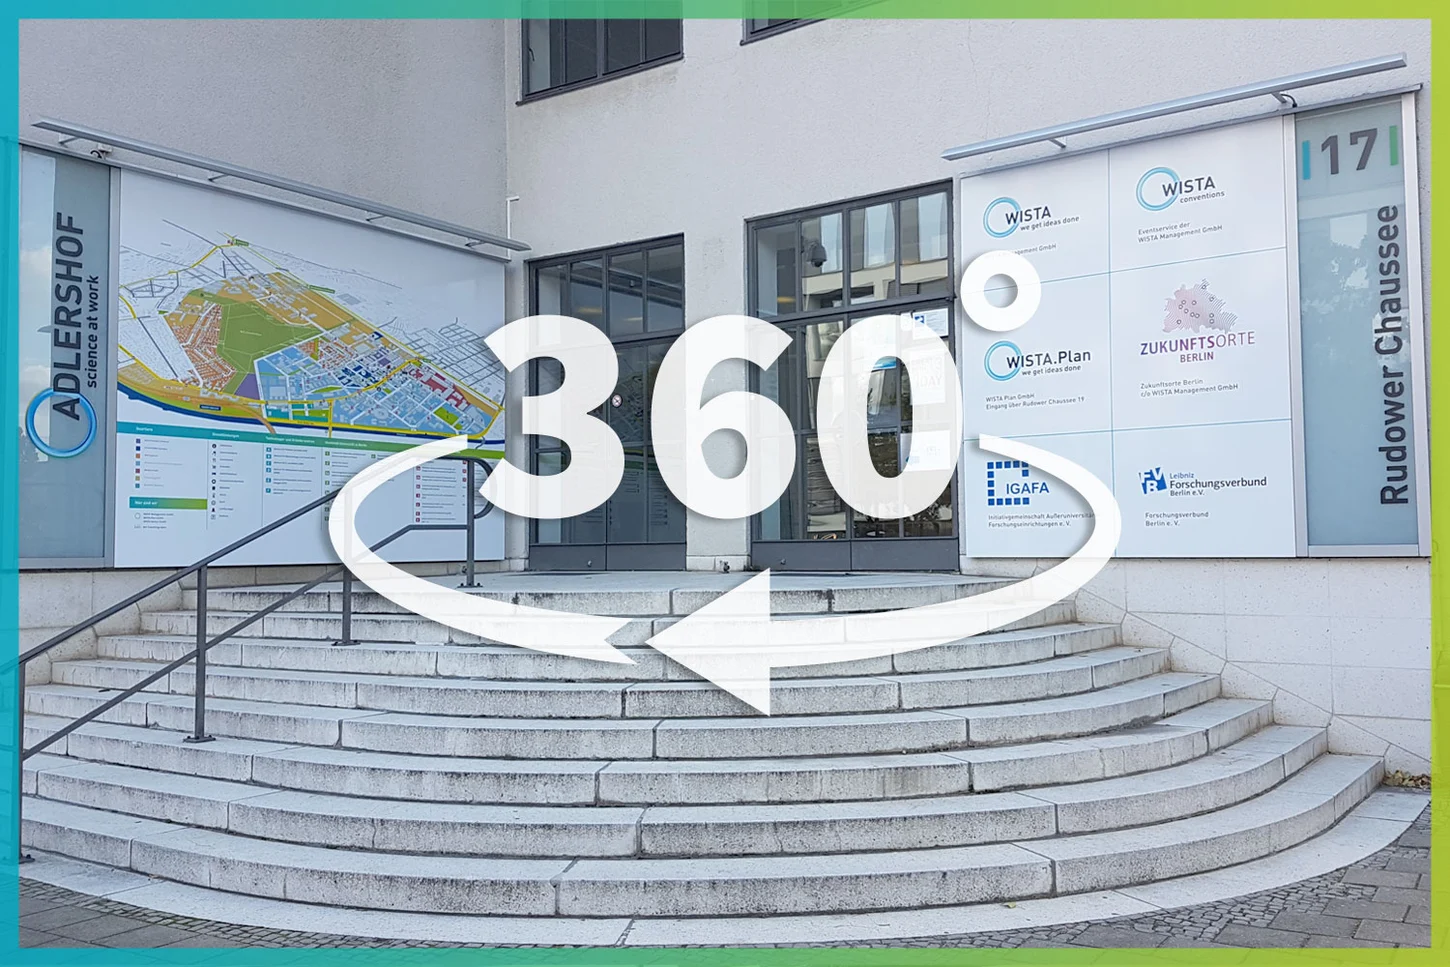 Link zur 360 Grad Tour bei der WISTA Management GmbH auf Google Maps